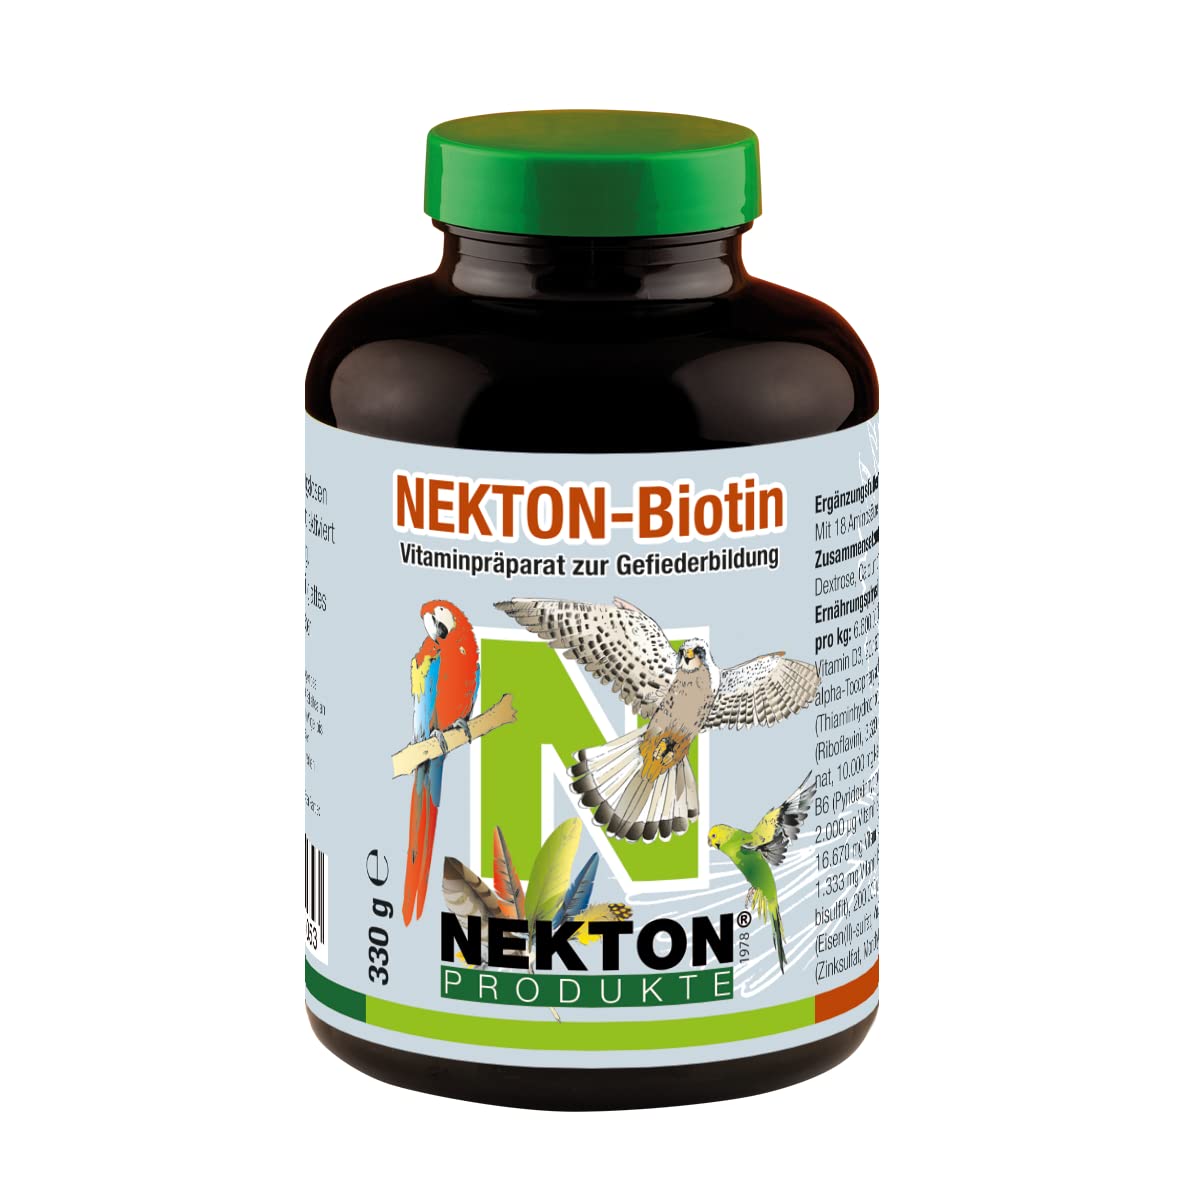 Nekton-Biotin (330g)